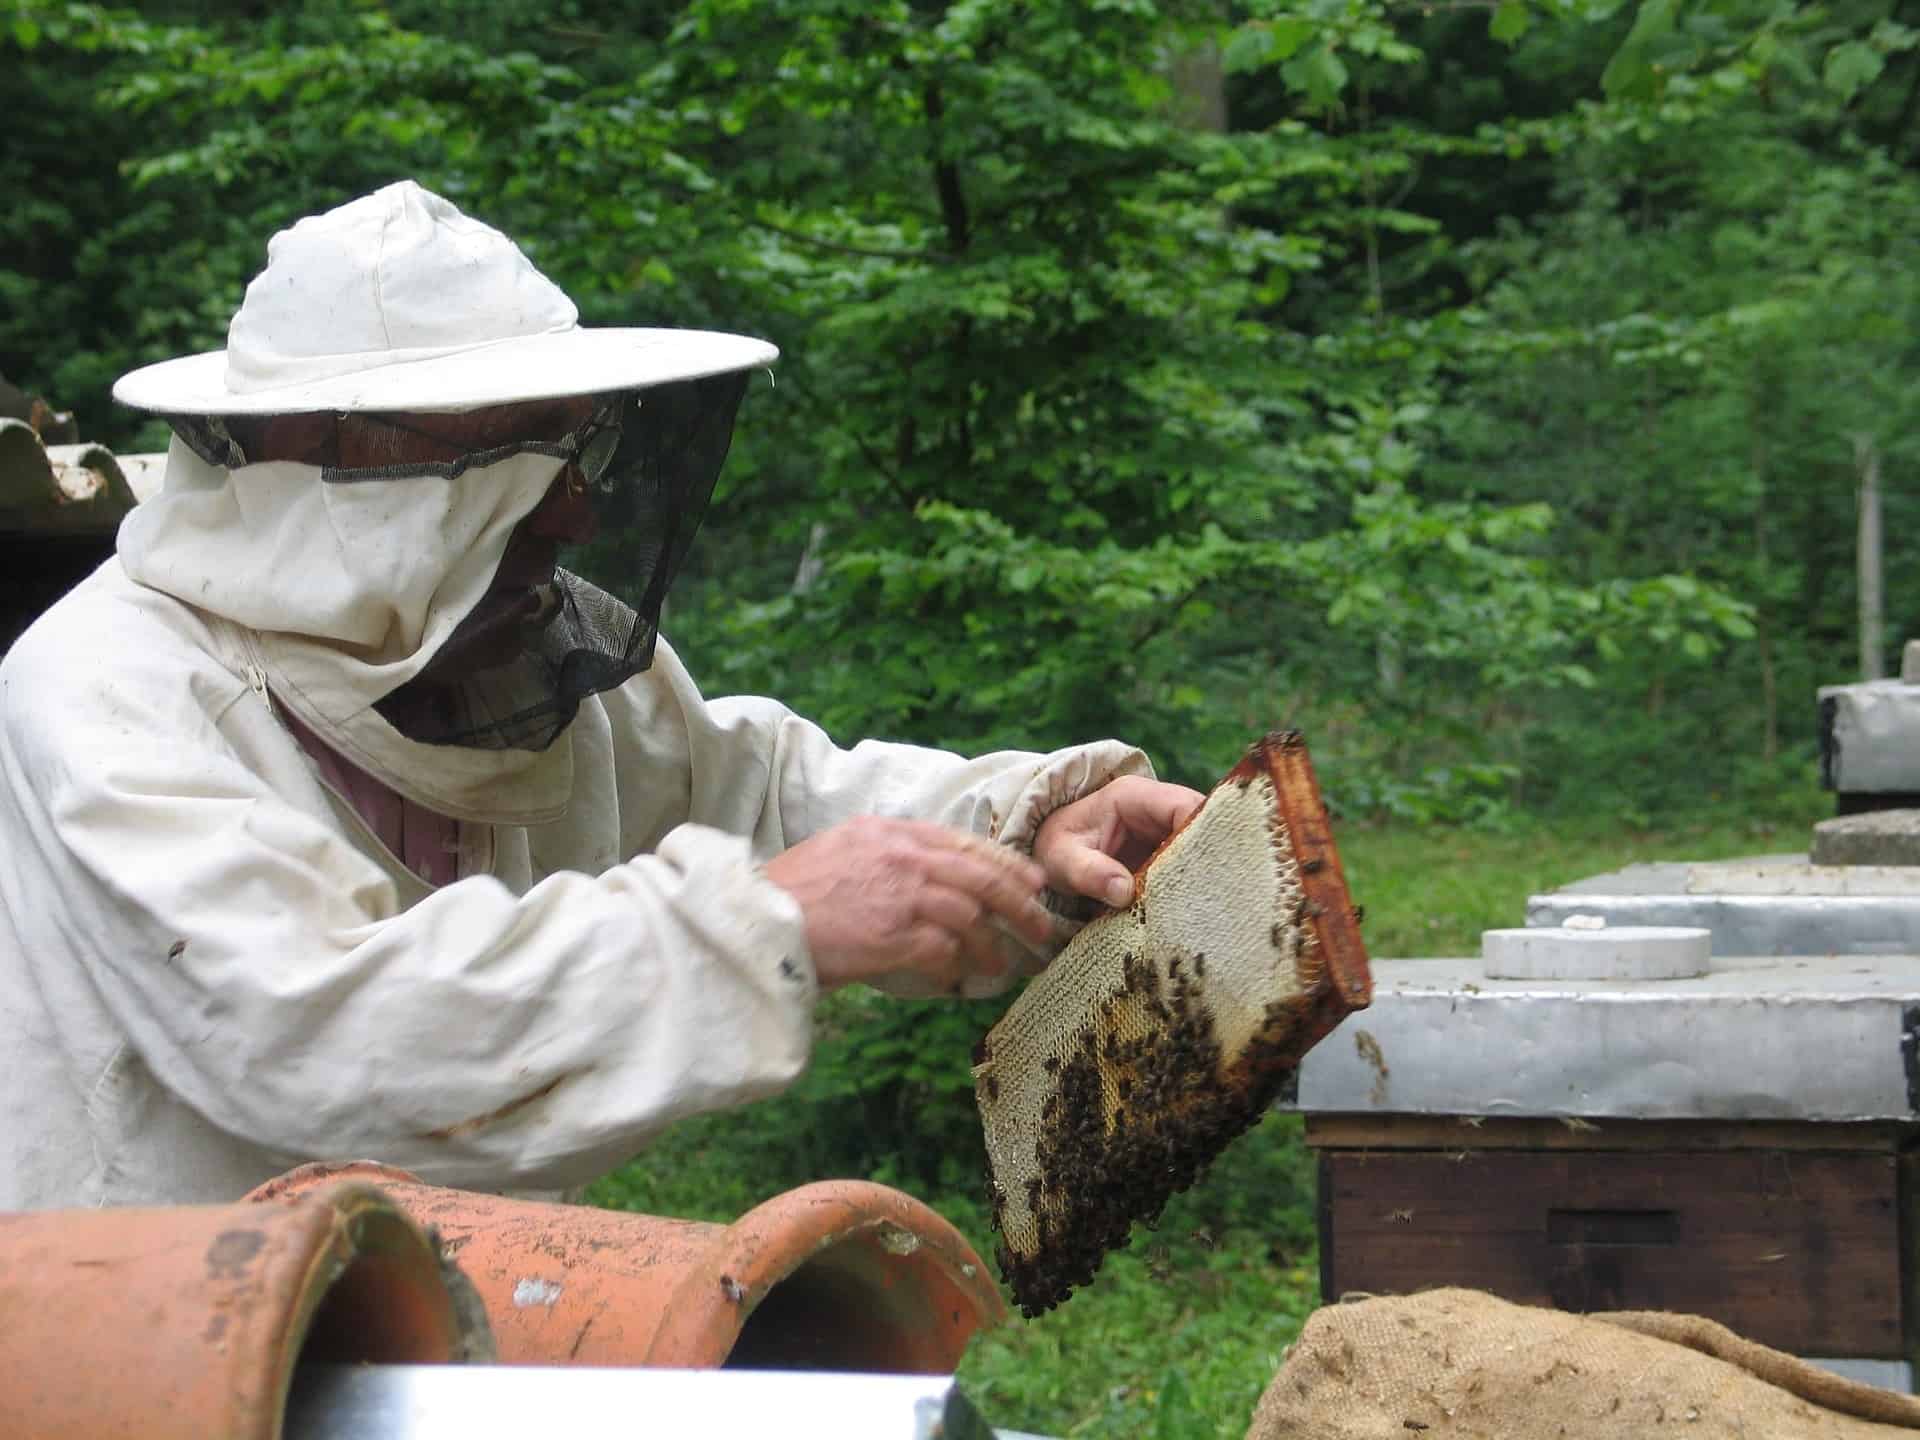 《嘟嘟家蜂蜜》100%台灣天然蜂蜜．天然完熟蜂蜜含豐富酵素